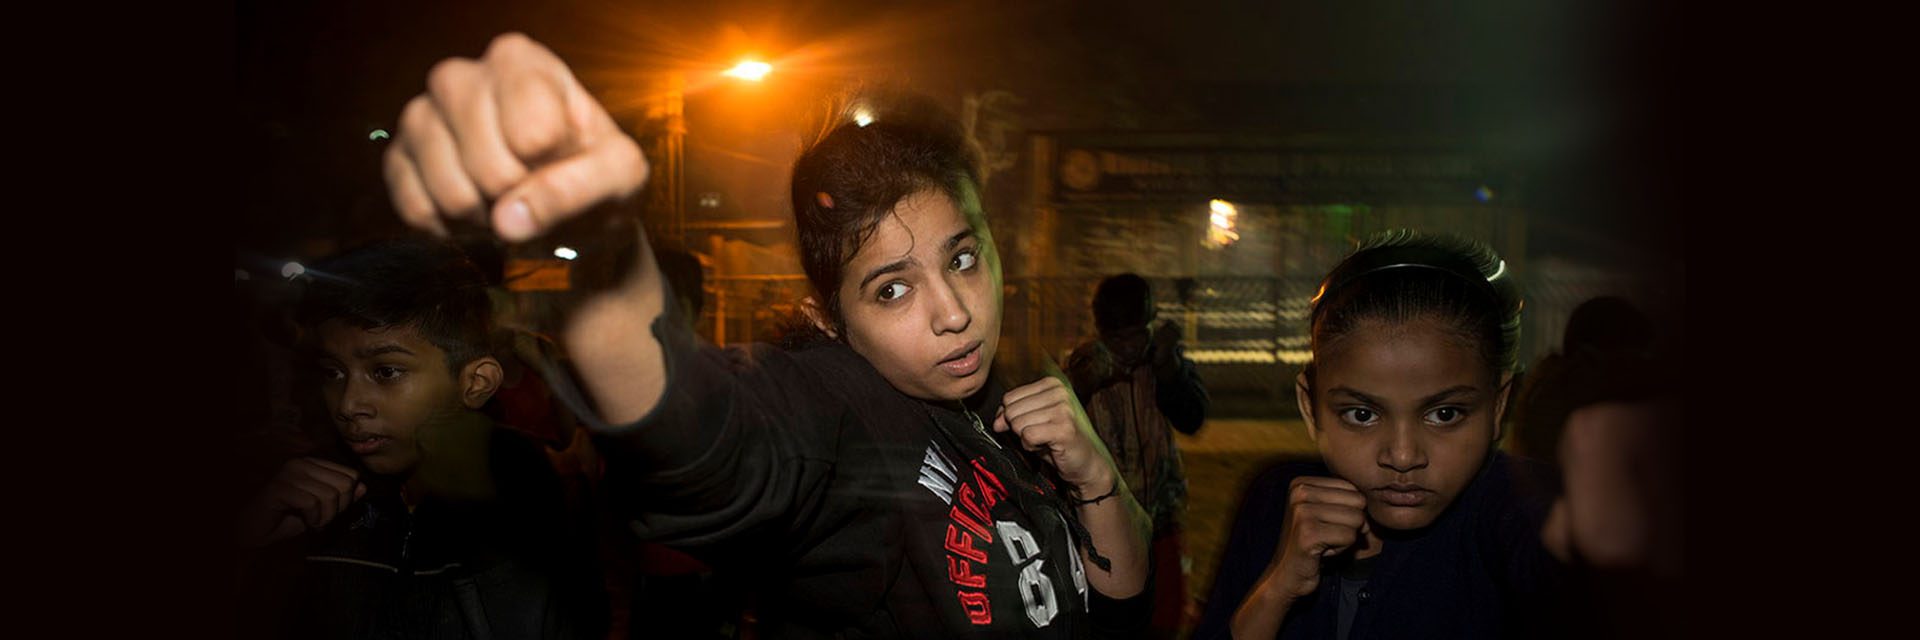 Boxe sem burca, essas boxeadoras zelosas de Kolkata dão um soco nocaute